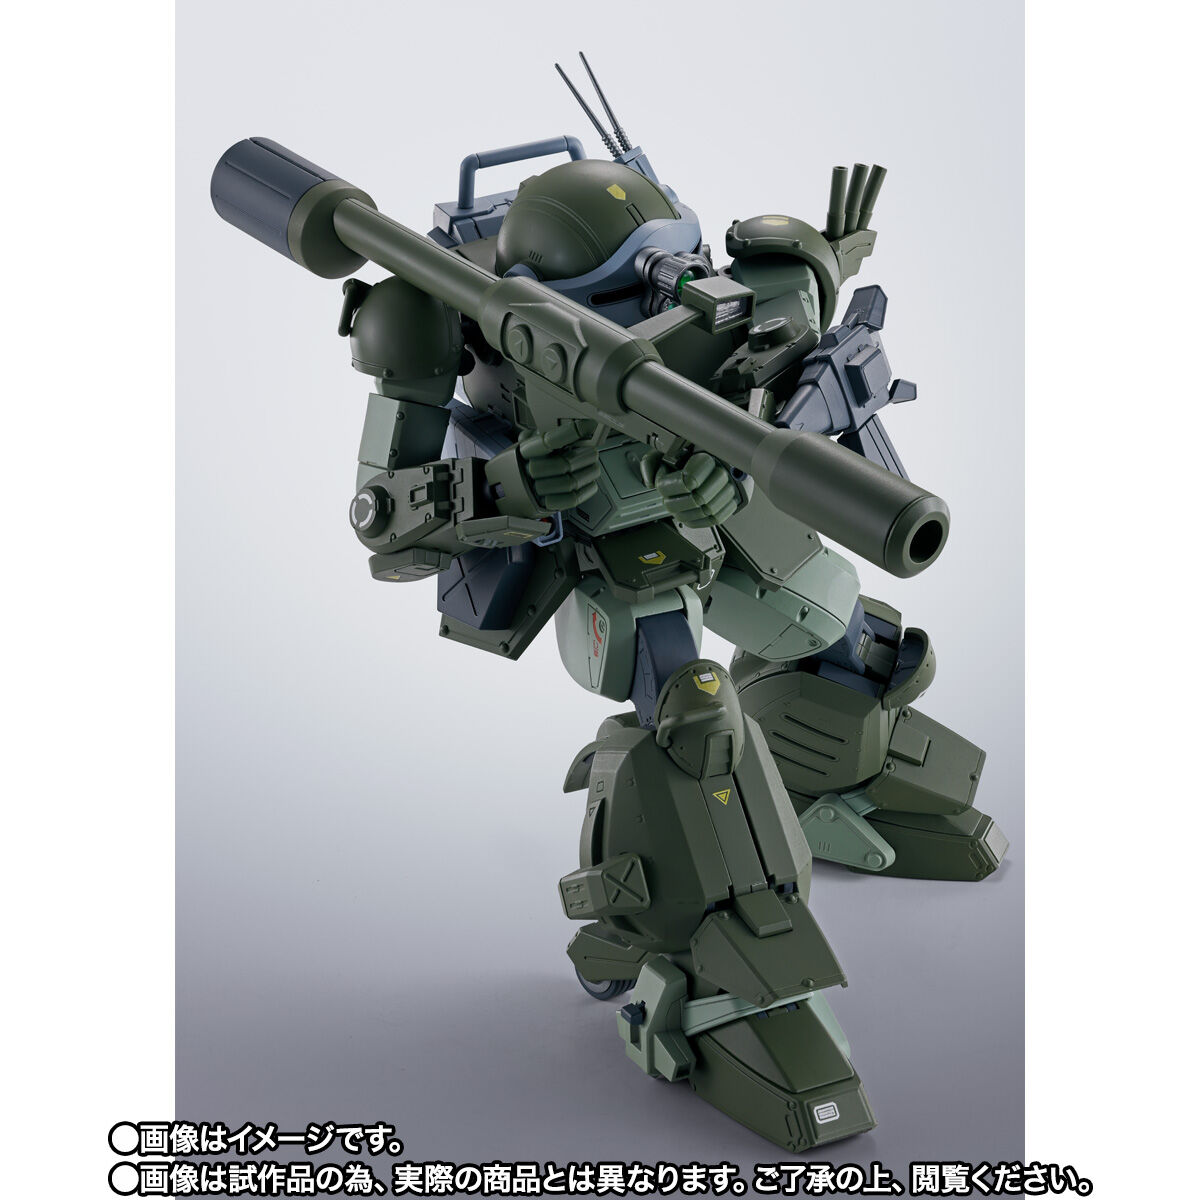 【限定販売】HI-METAL R『スコープドッグ ターボカスタム』装甲騎兵ボトムズ 可動フィギュア-003